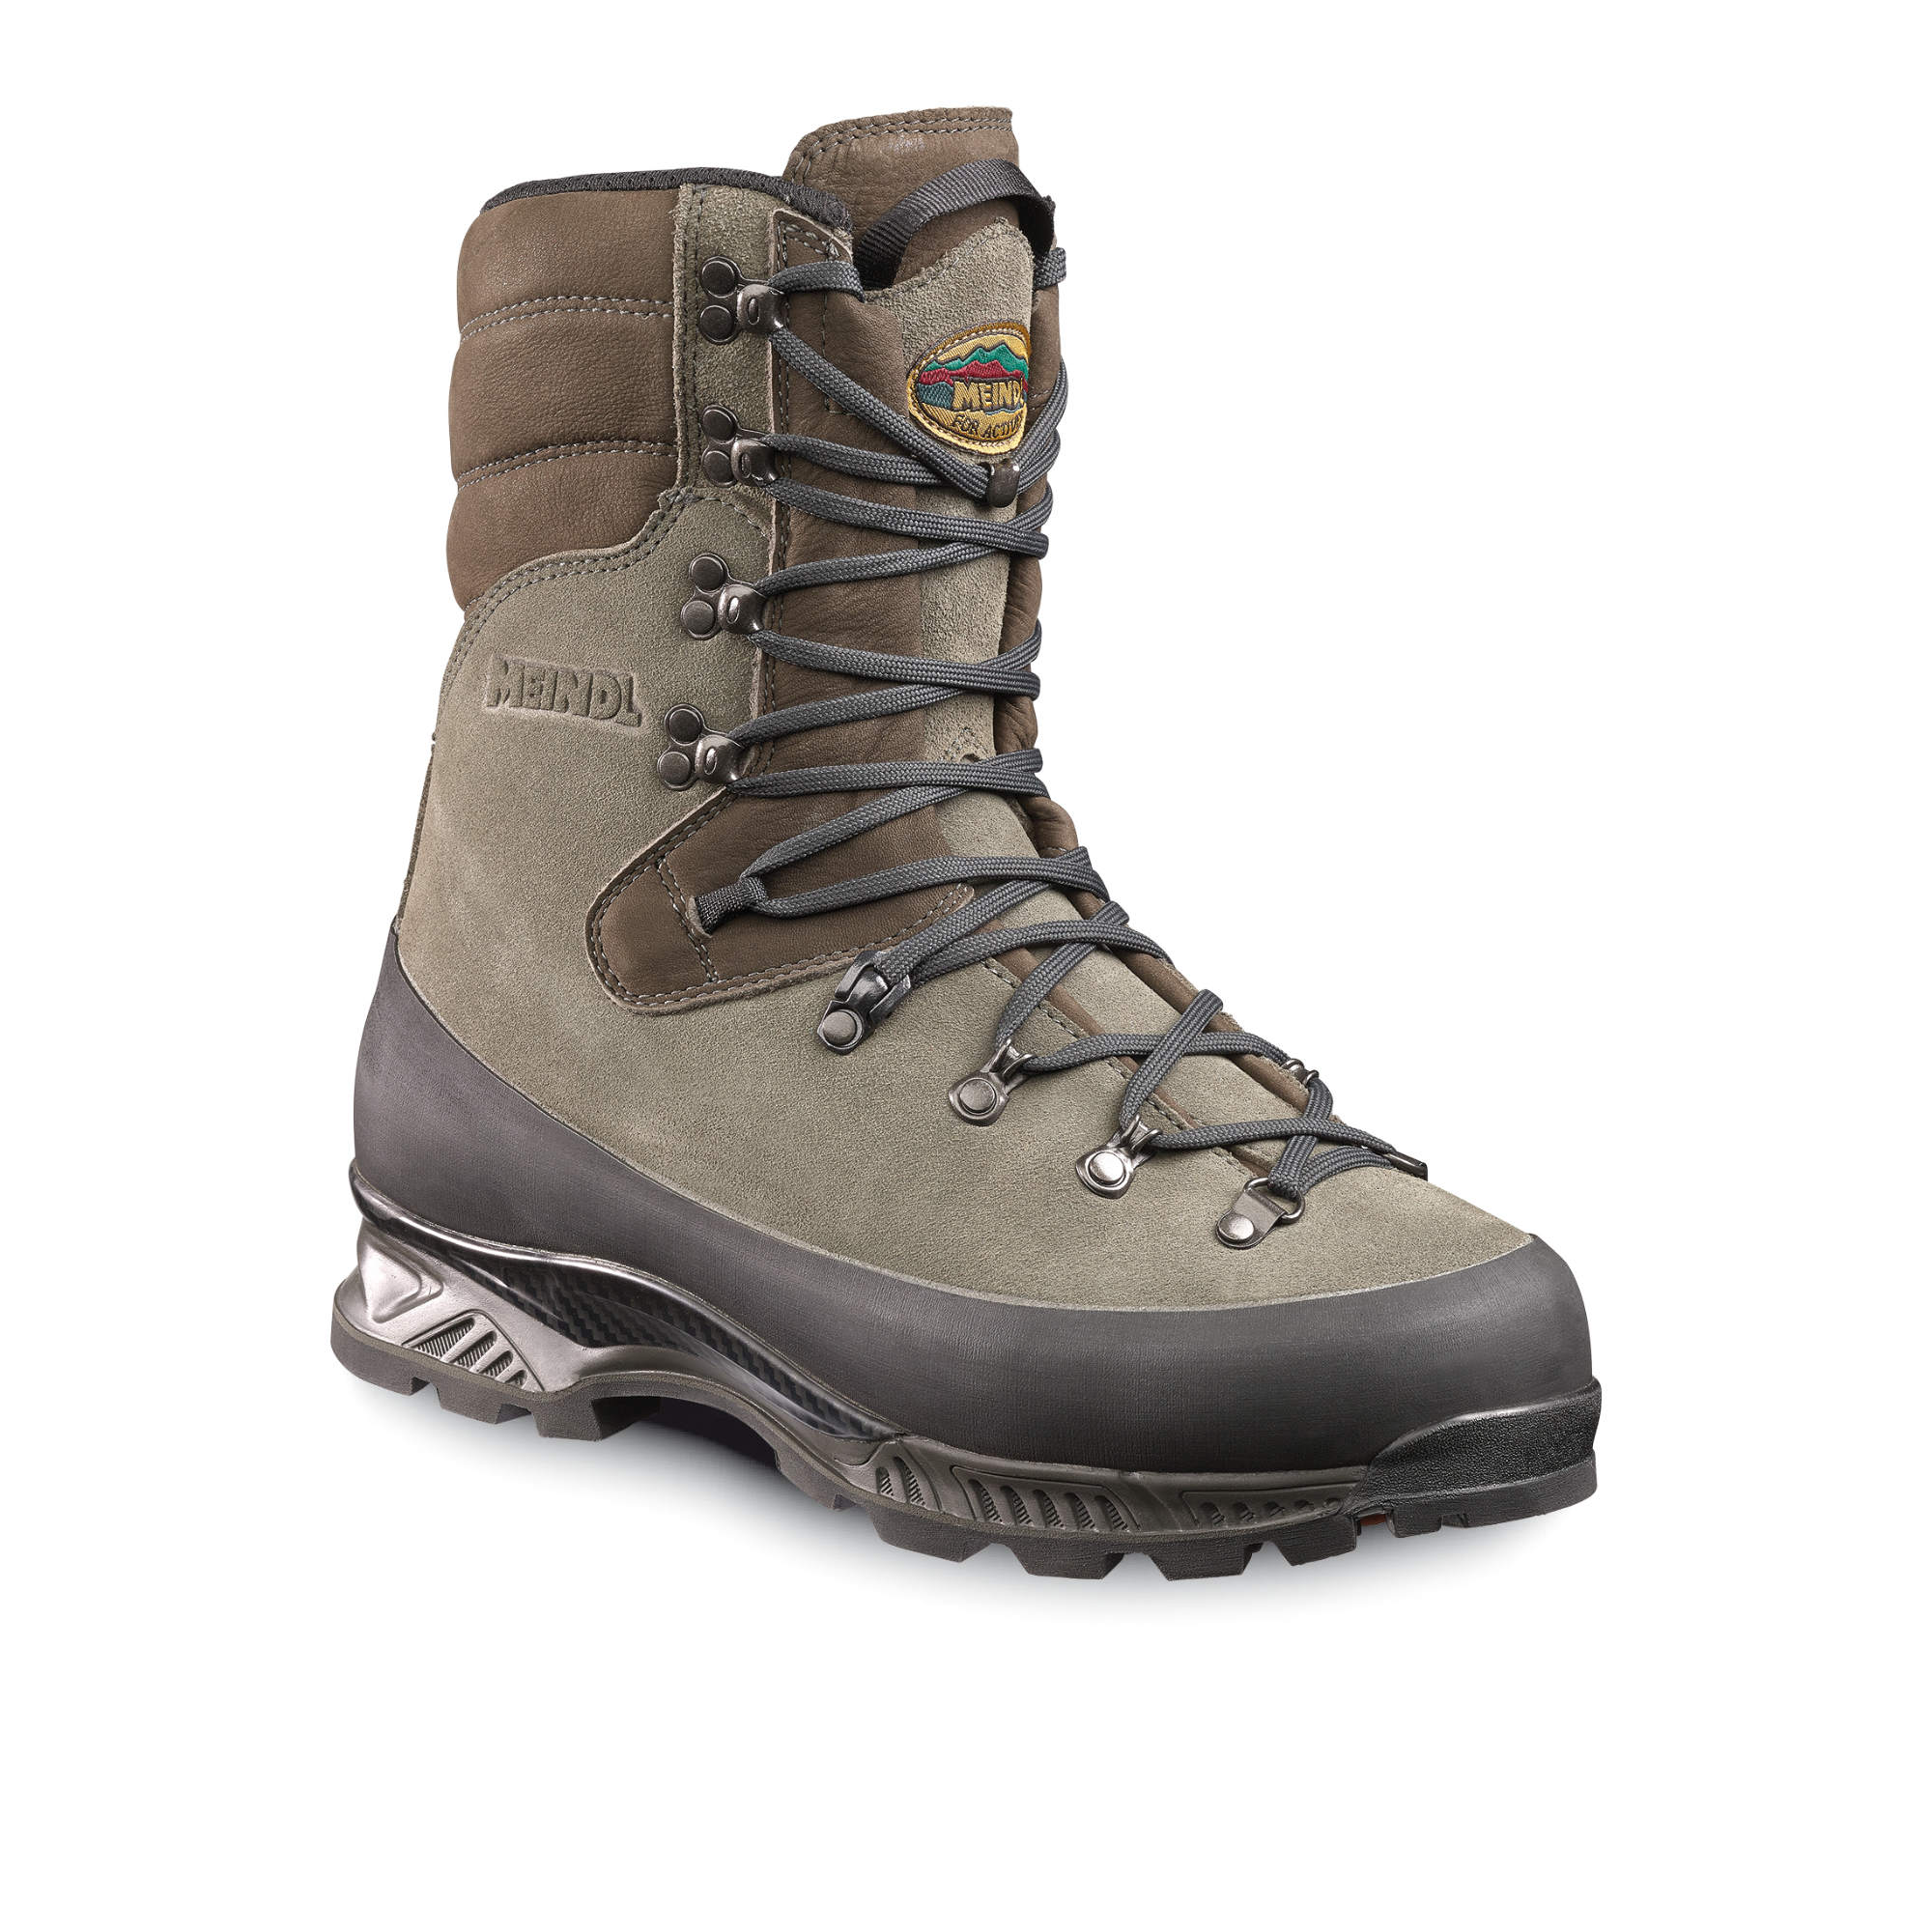 Meindl Kibo Hiking Boots | Bramwell International Ltd